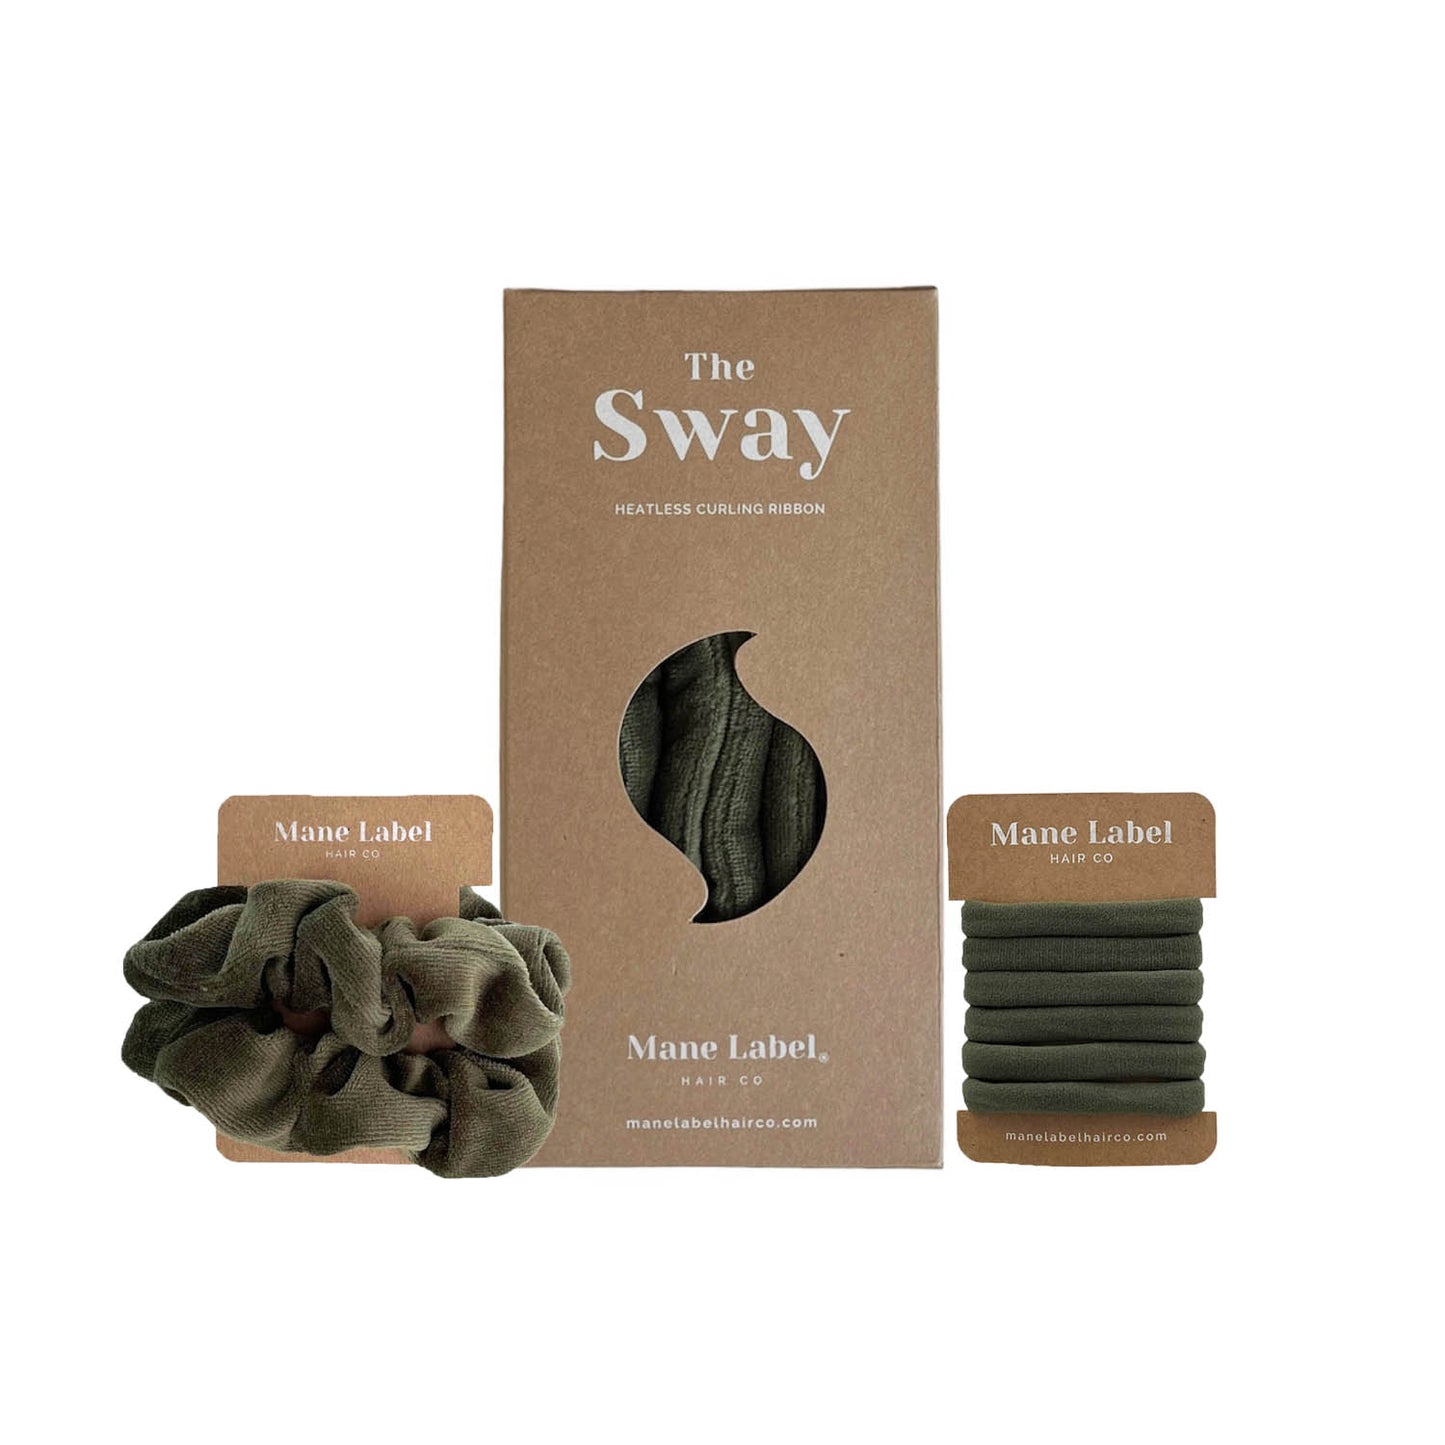 Heatless Curl Set | Sway Heatless Curling Ribbon | Scrunchies + 6 Hair Ties | Olive green